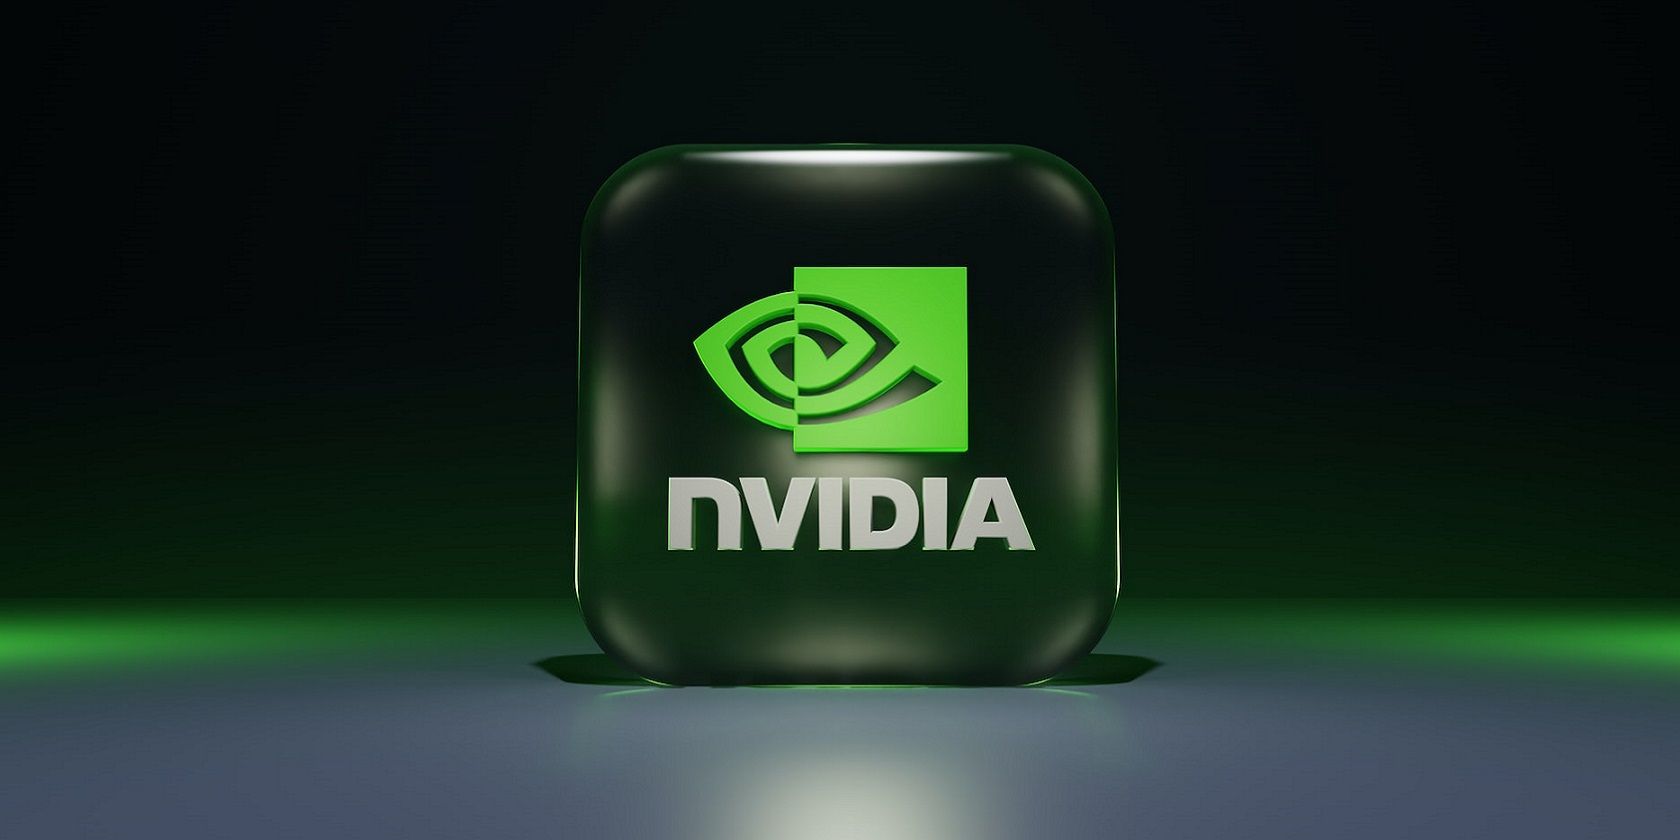 The NVIDIA logo 